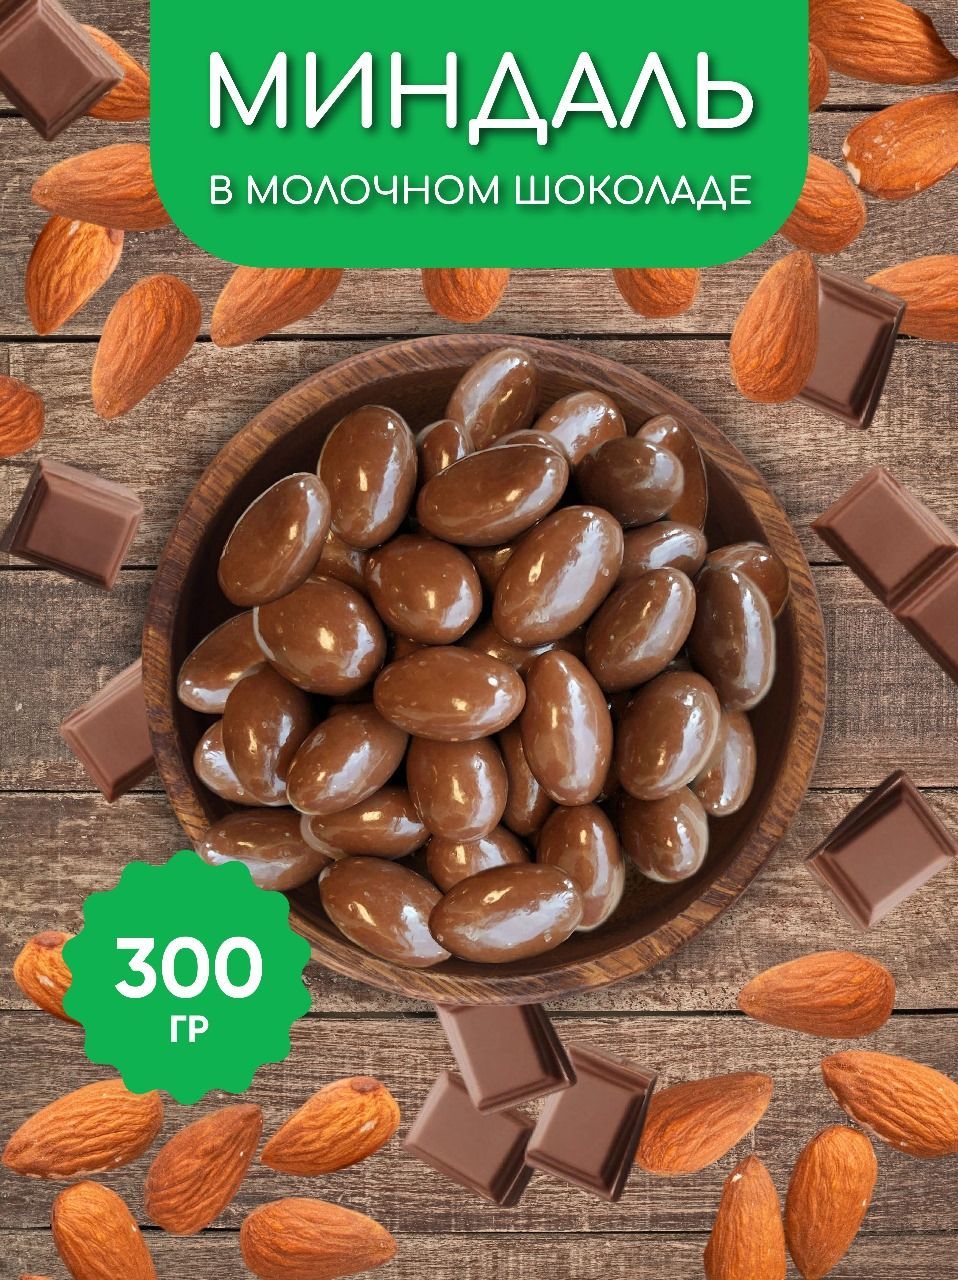 300 шоколада